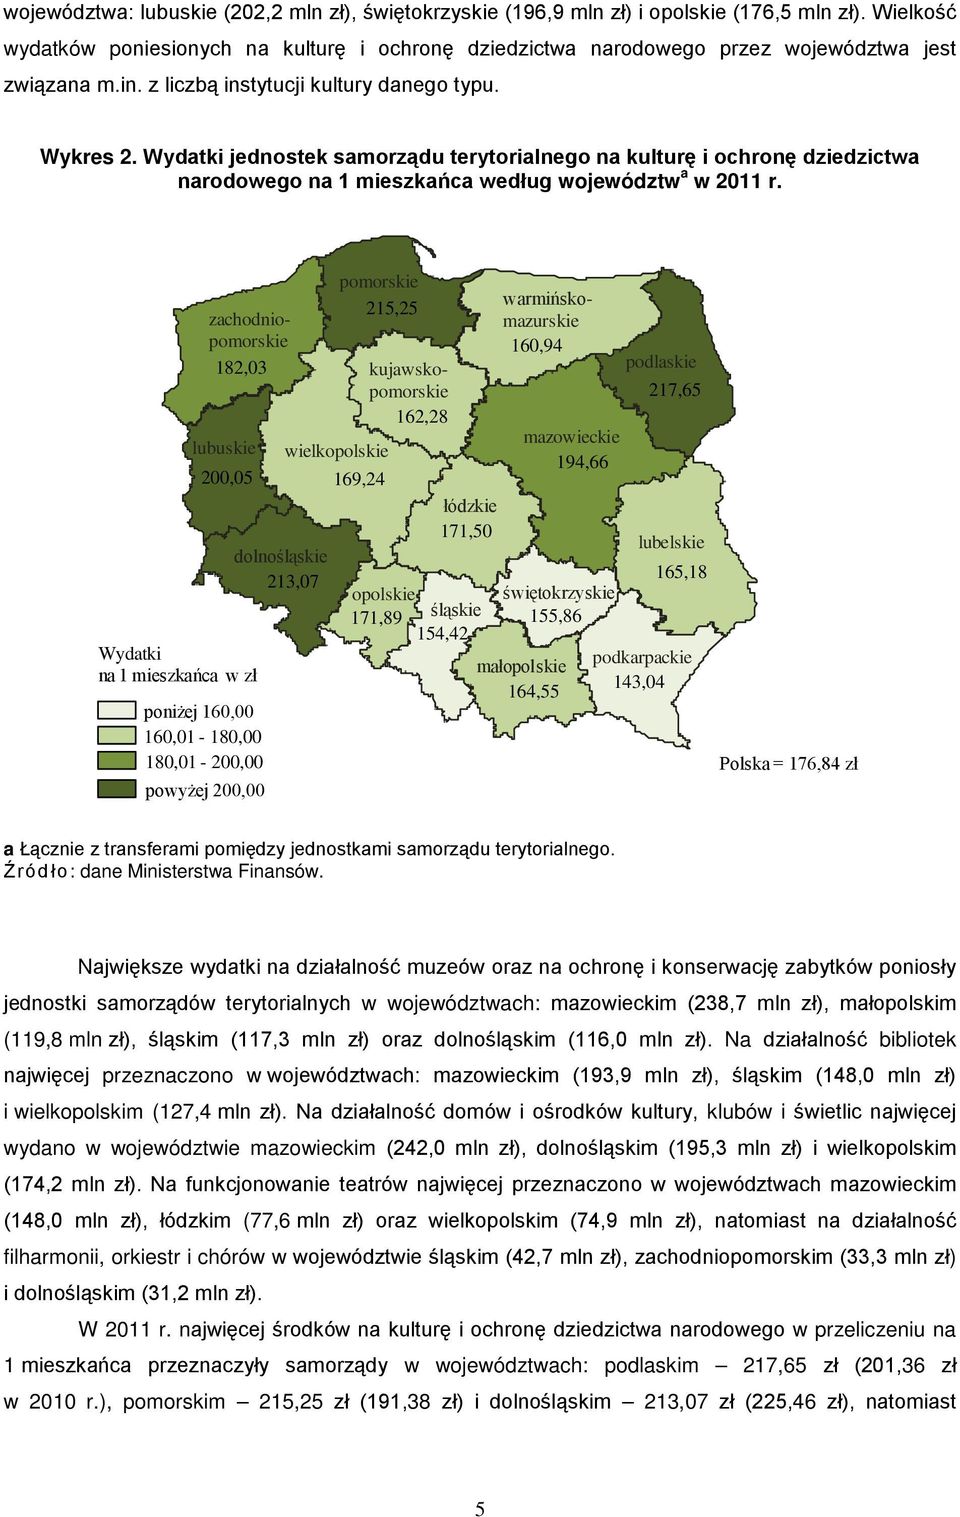 Wydatki jednostek samorządu terytorialnego na kulturę i ochronę dziedzictwa narodowego na 1 mieszkańca według województw a w 2011 r.